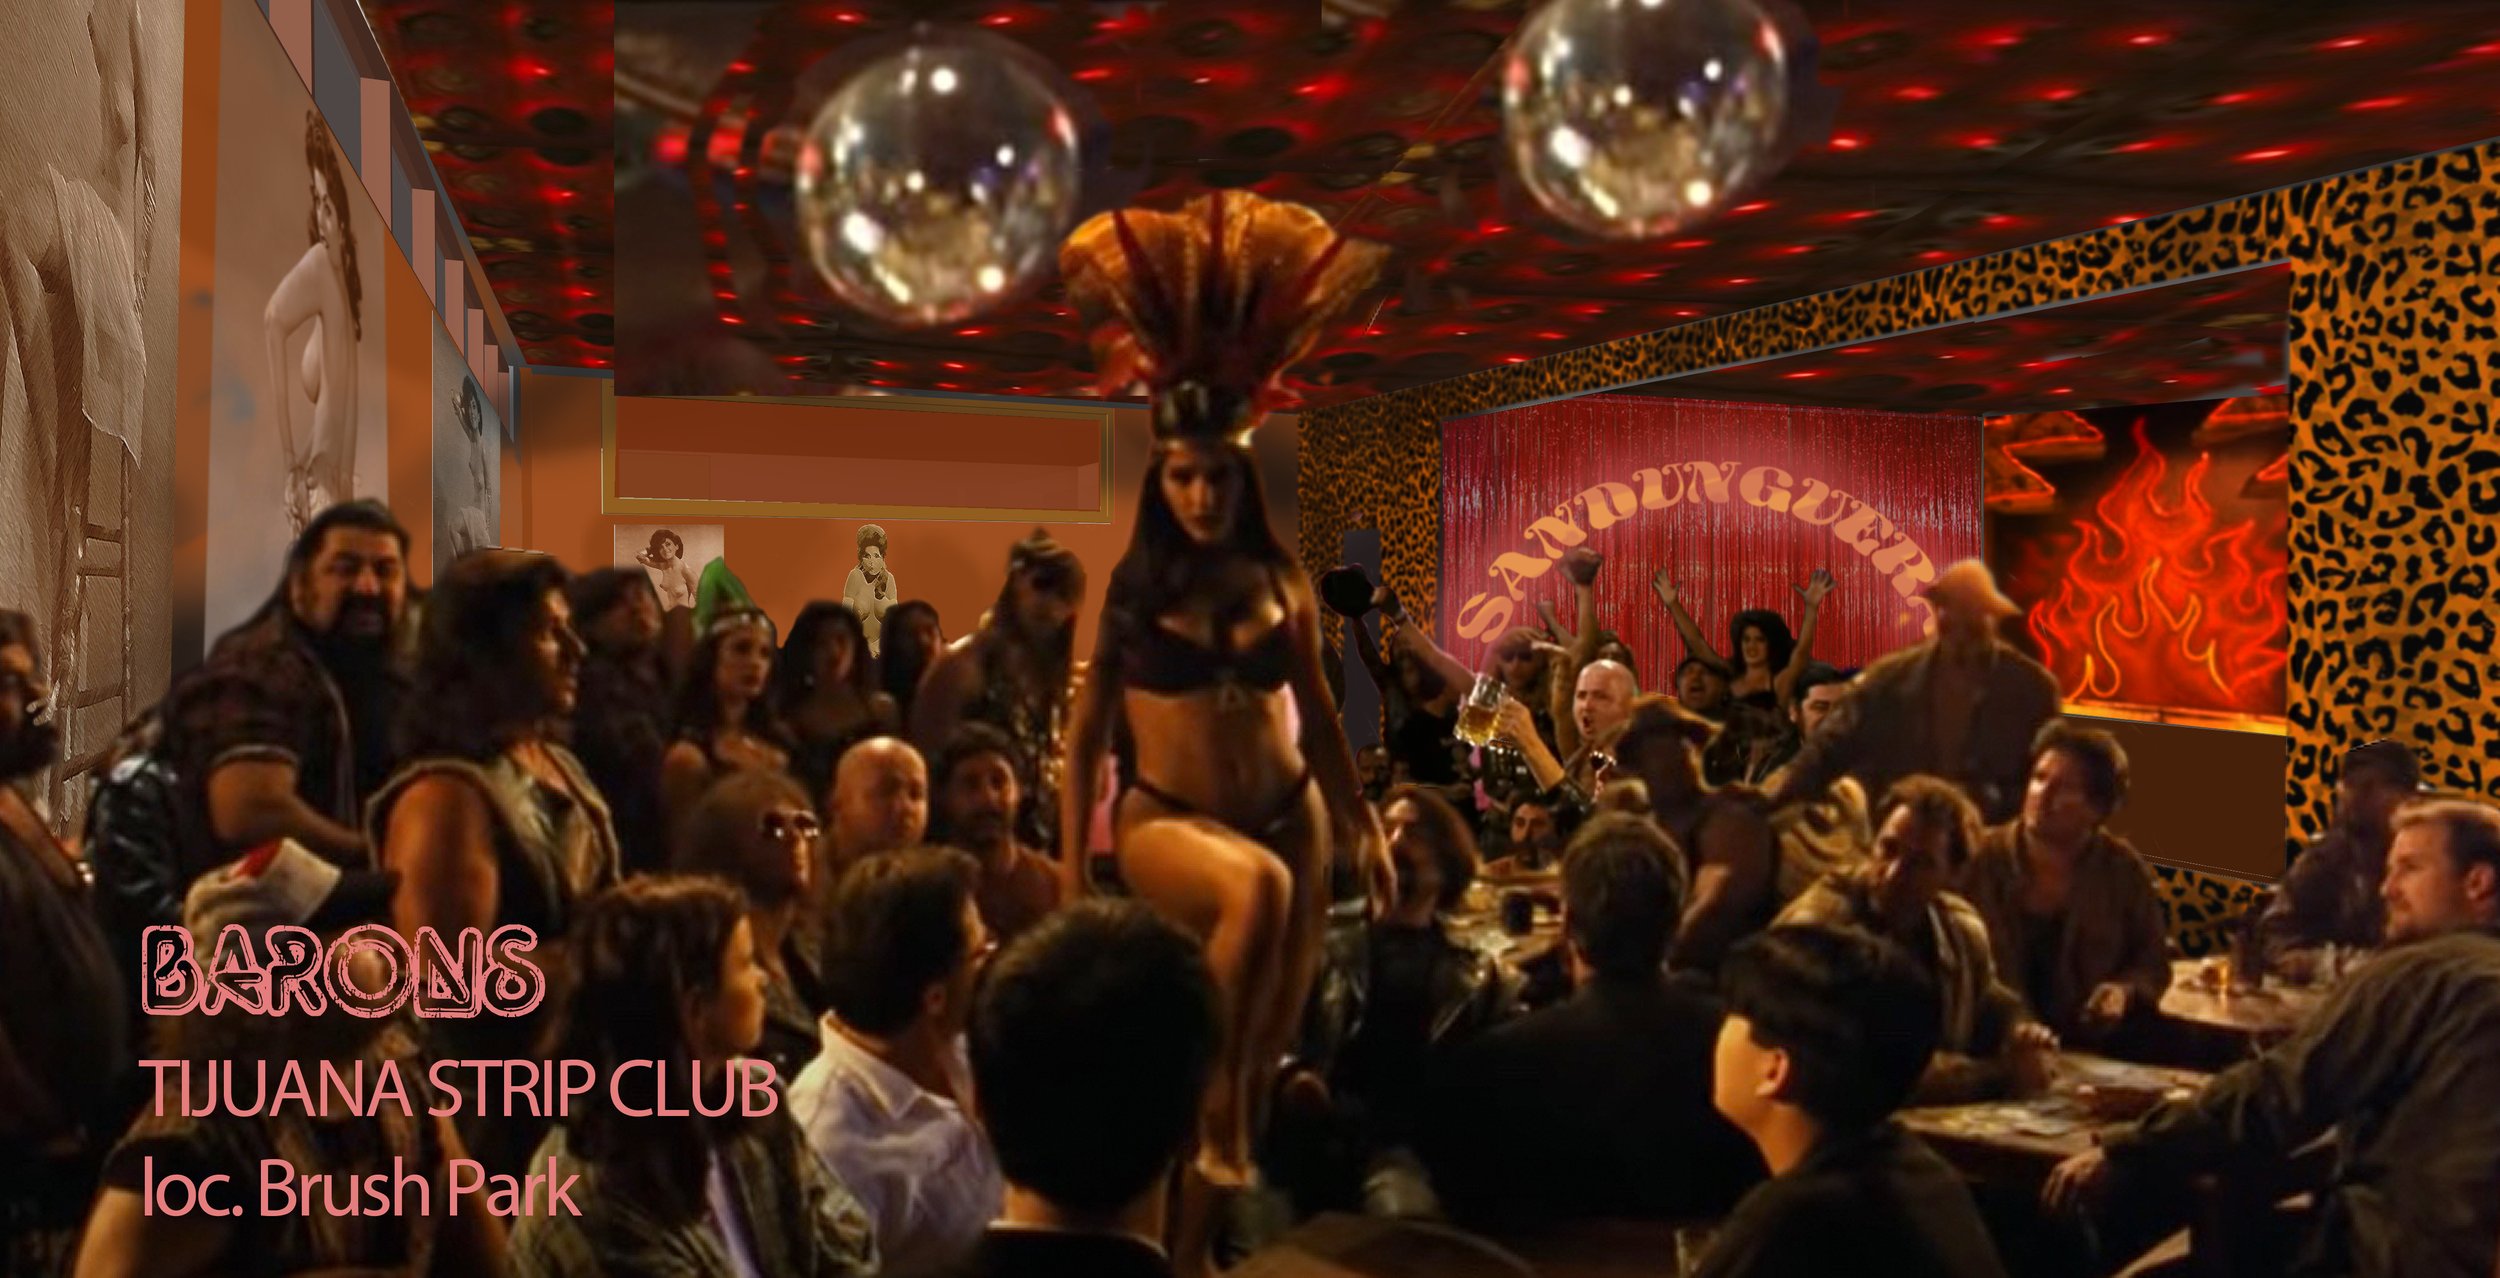 tijuana strip club copy.jpg